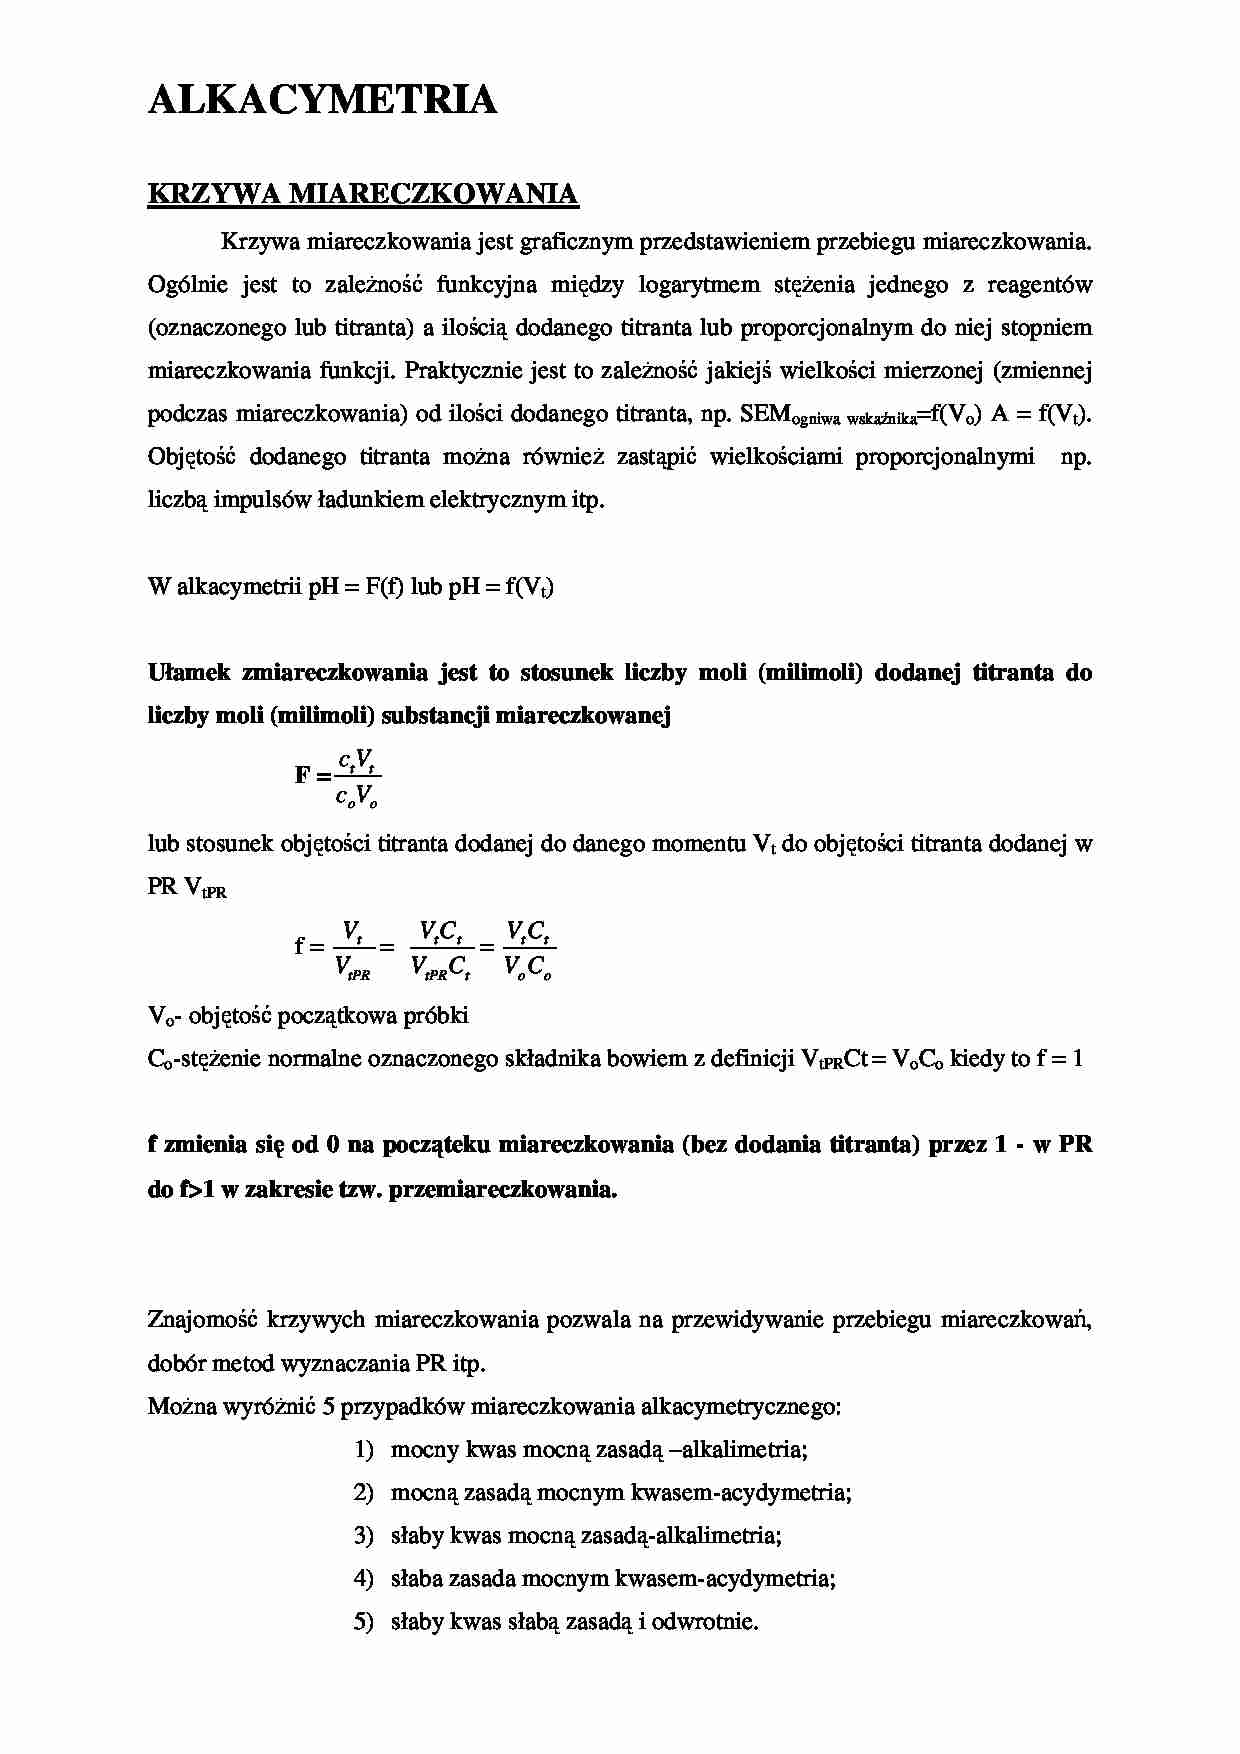 Chemia analityczna - Alkacymetria - strona 1